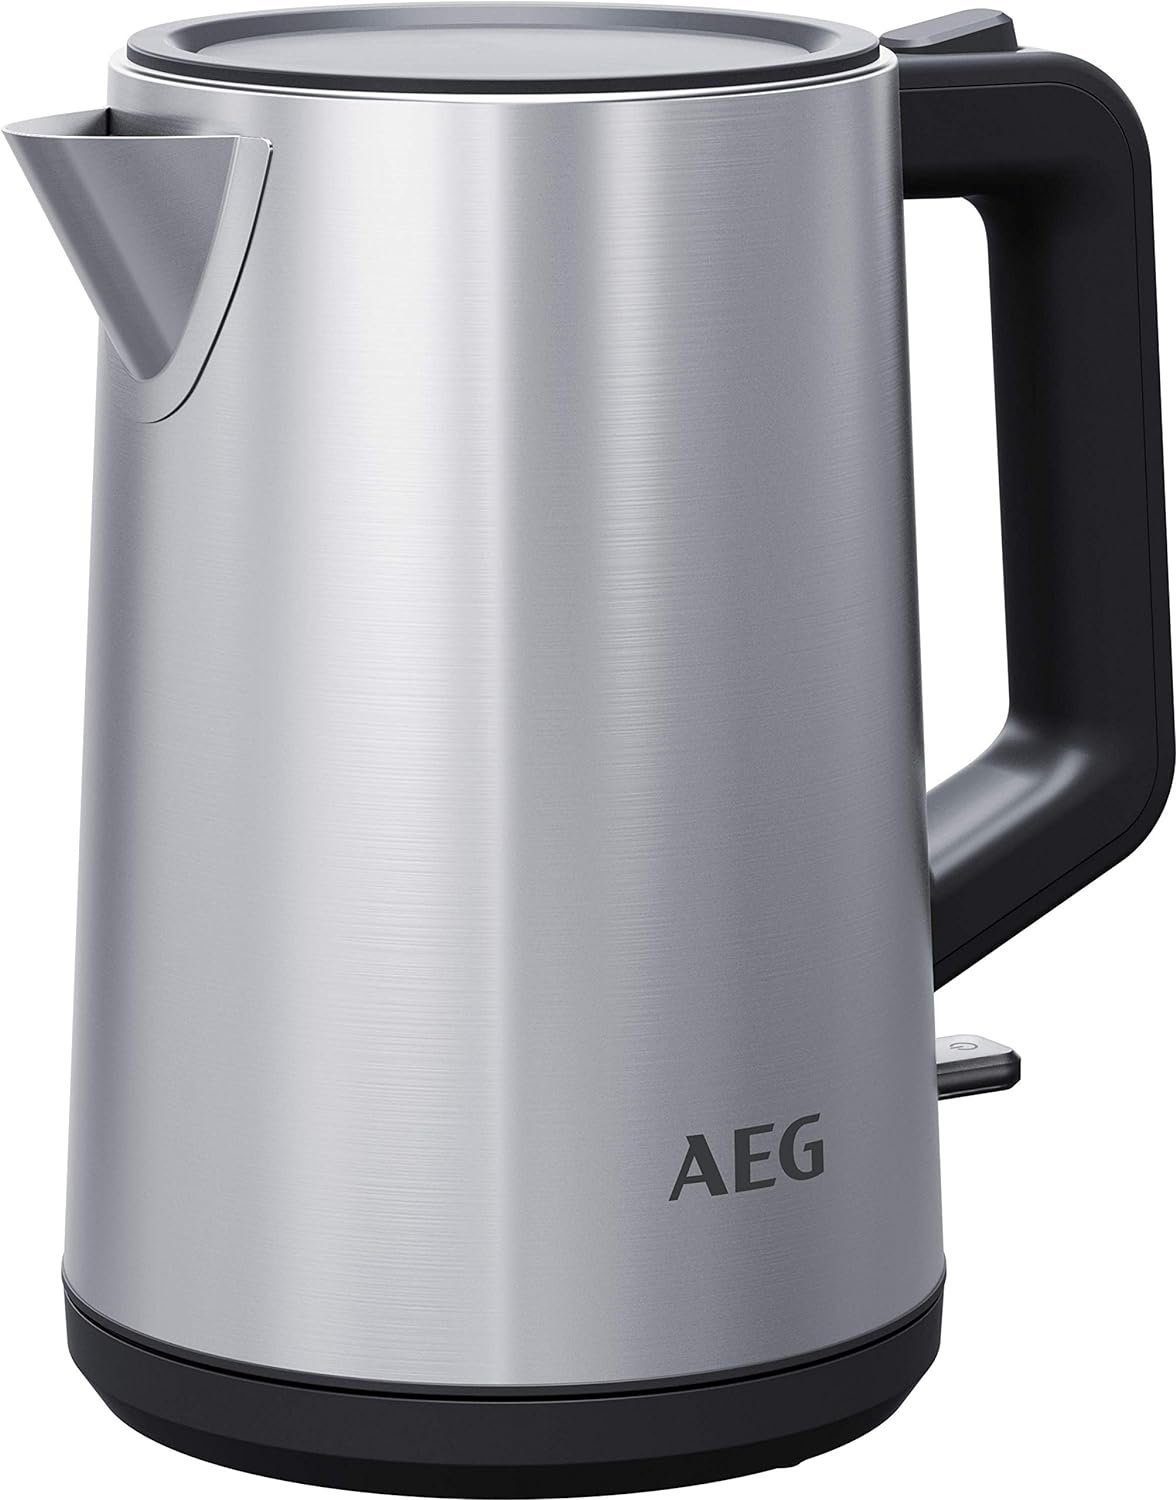 AEG Wasserkocher Wasserkocher K4-1-4ST Wasserkocher